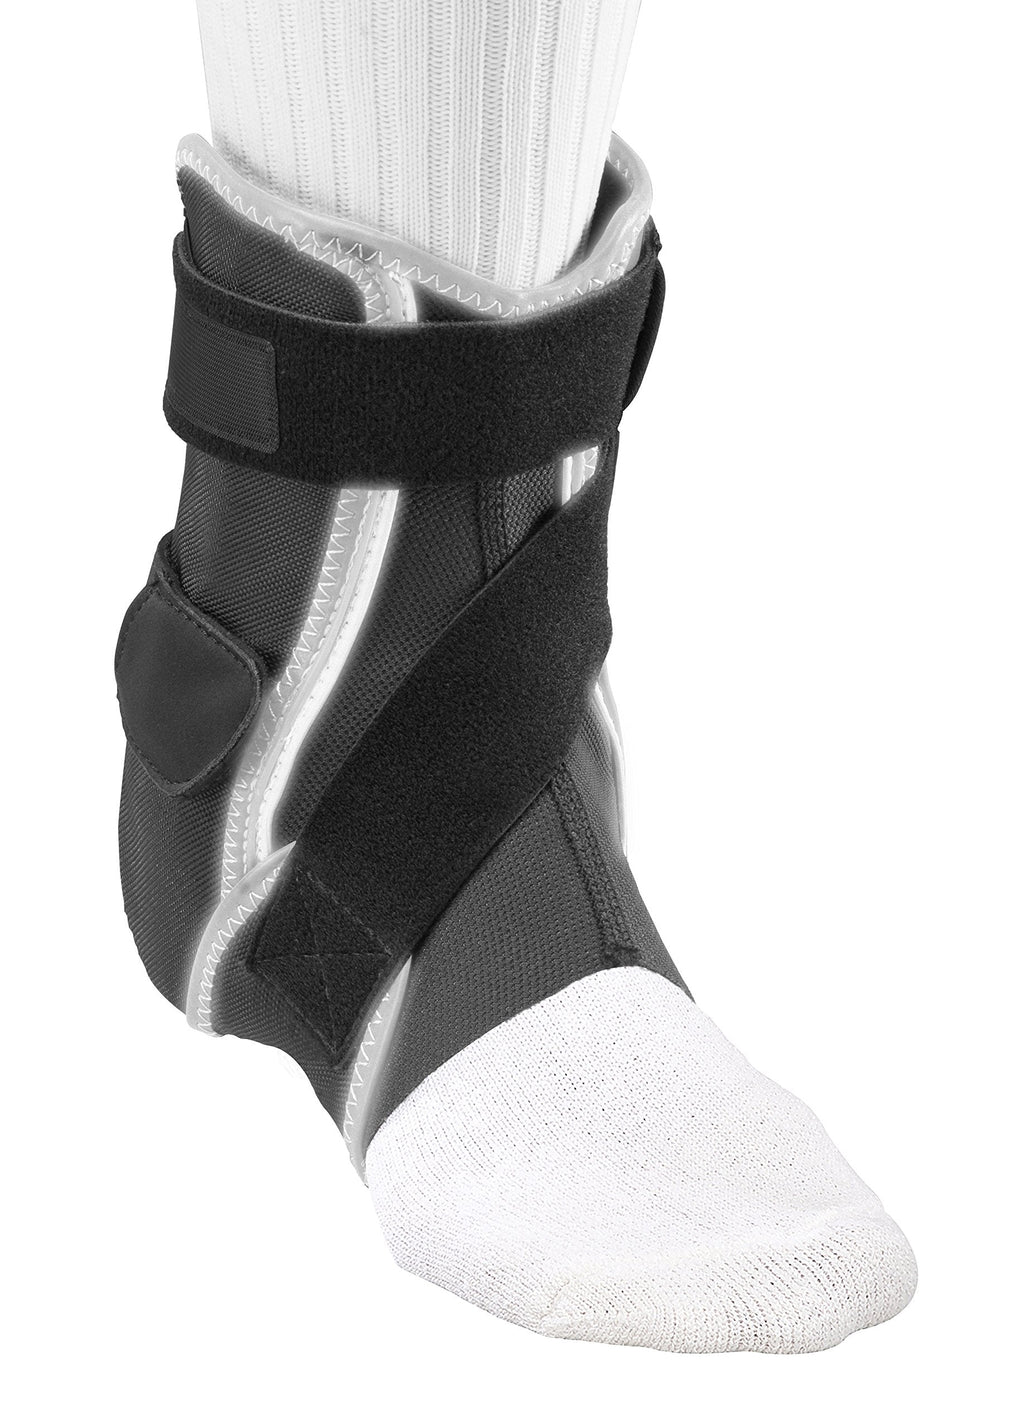 [Australia] - Mueller Hg80 Premium Hard Shell Ankle Brace - Right - XL 